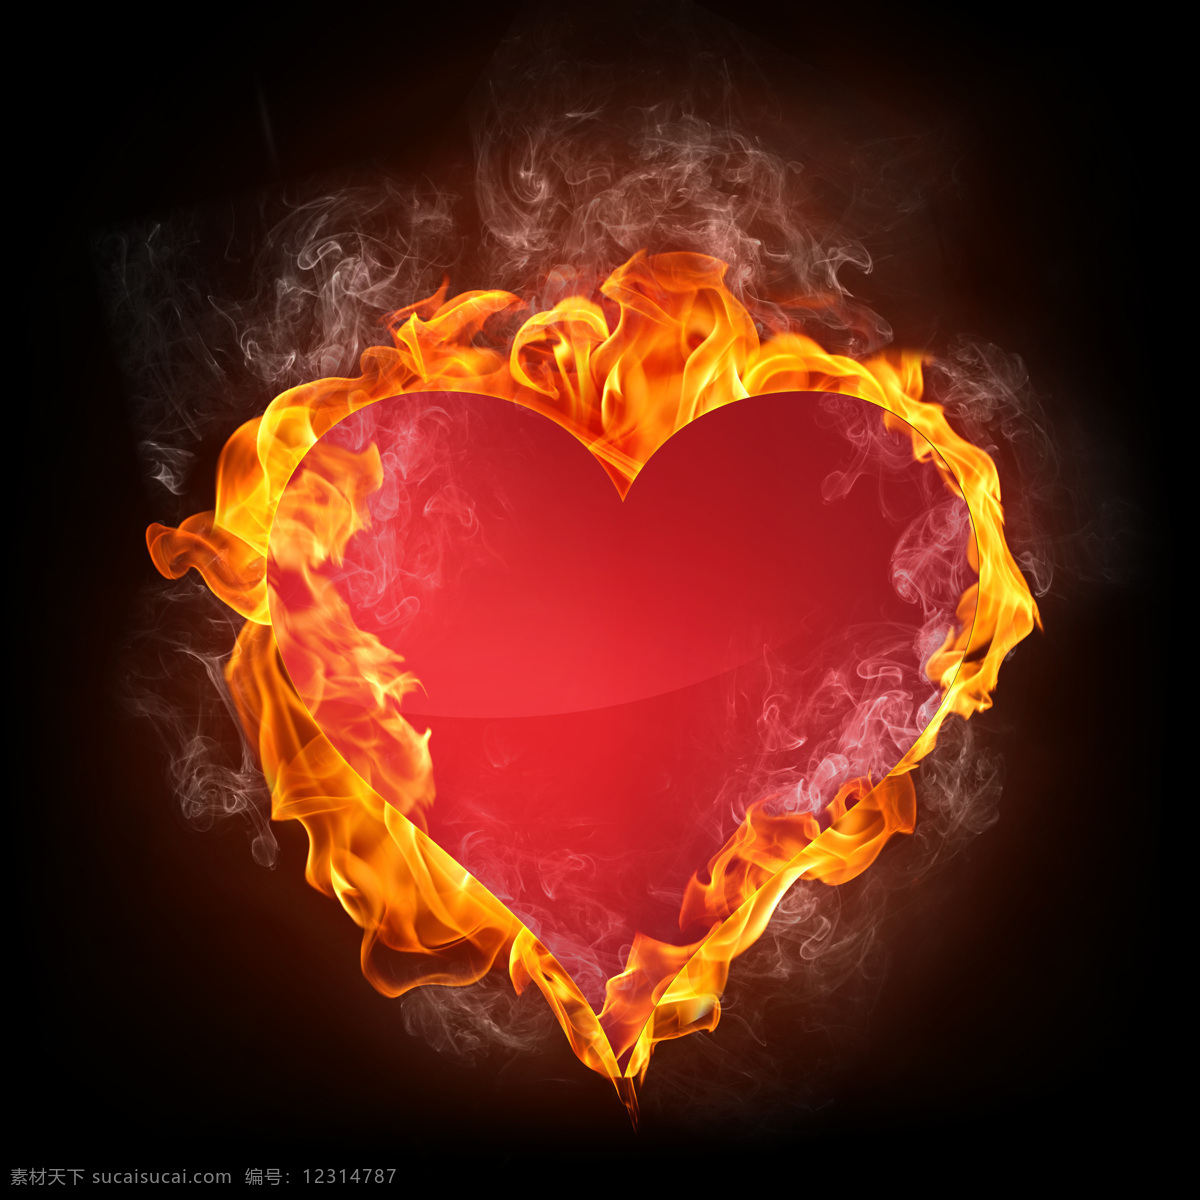 火焰 包围 心 型 心型 爱心 燃烧的心 高清图片 饱满的心型 火焰图片 生活百科